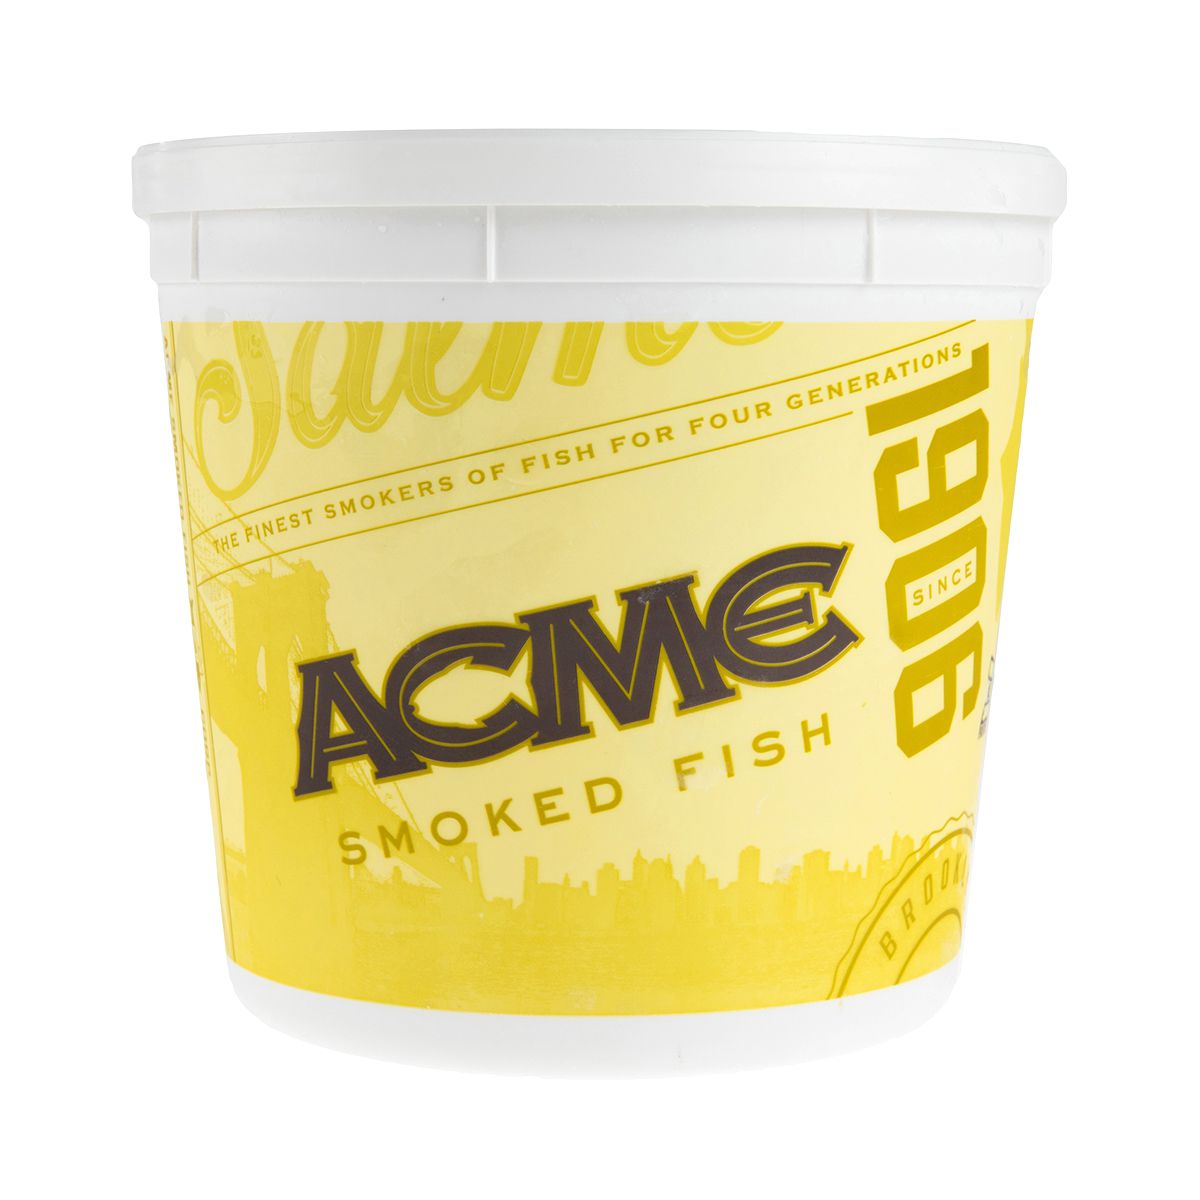 Acme Smoked Fish Whitefish Salad 5 lb Jar